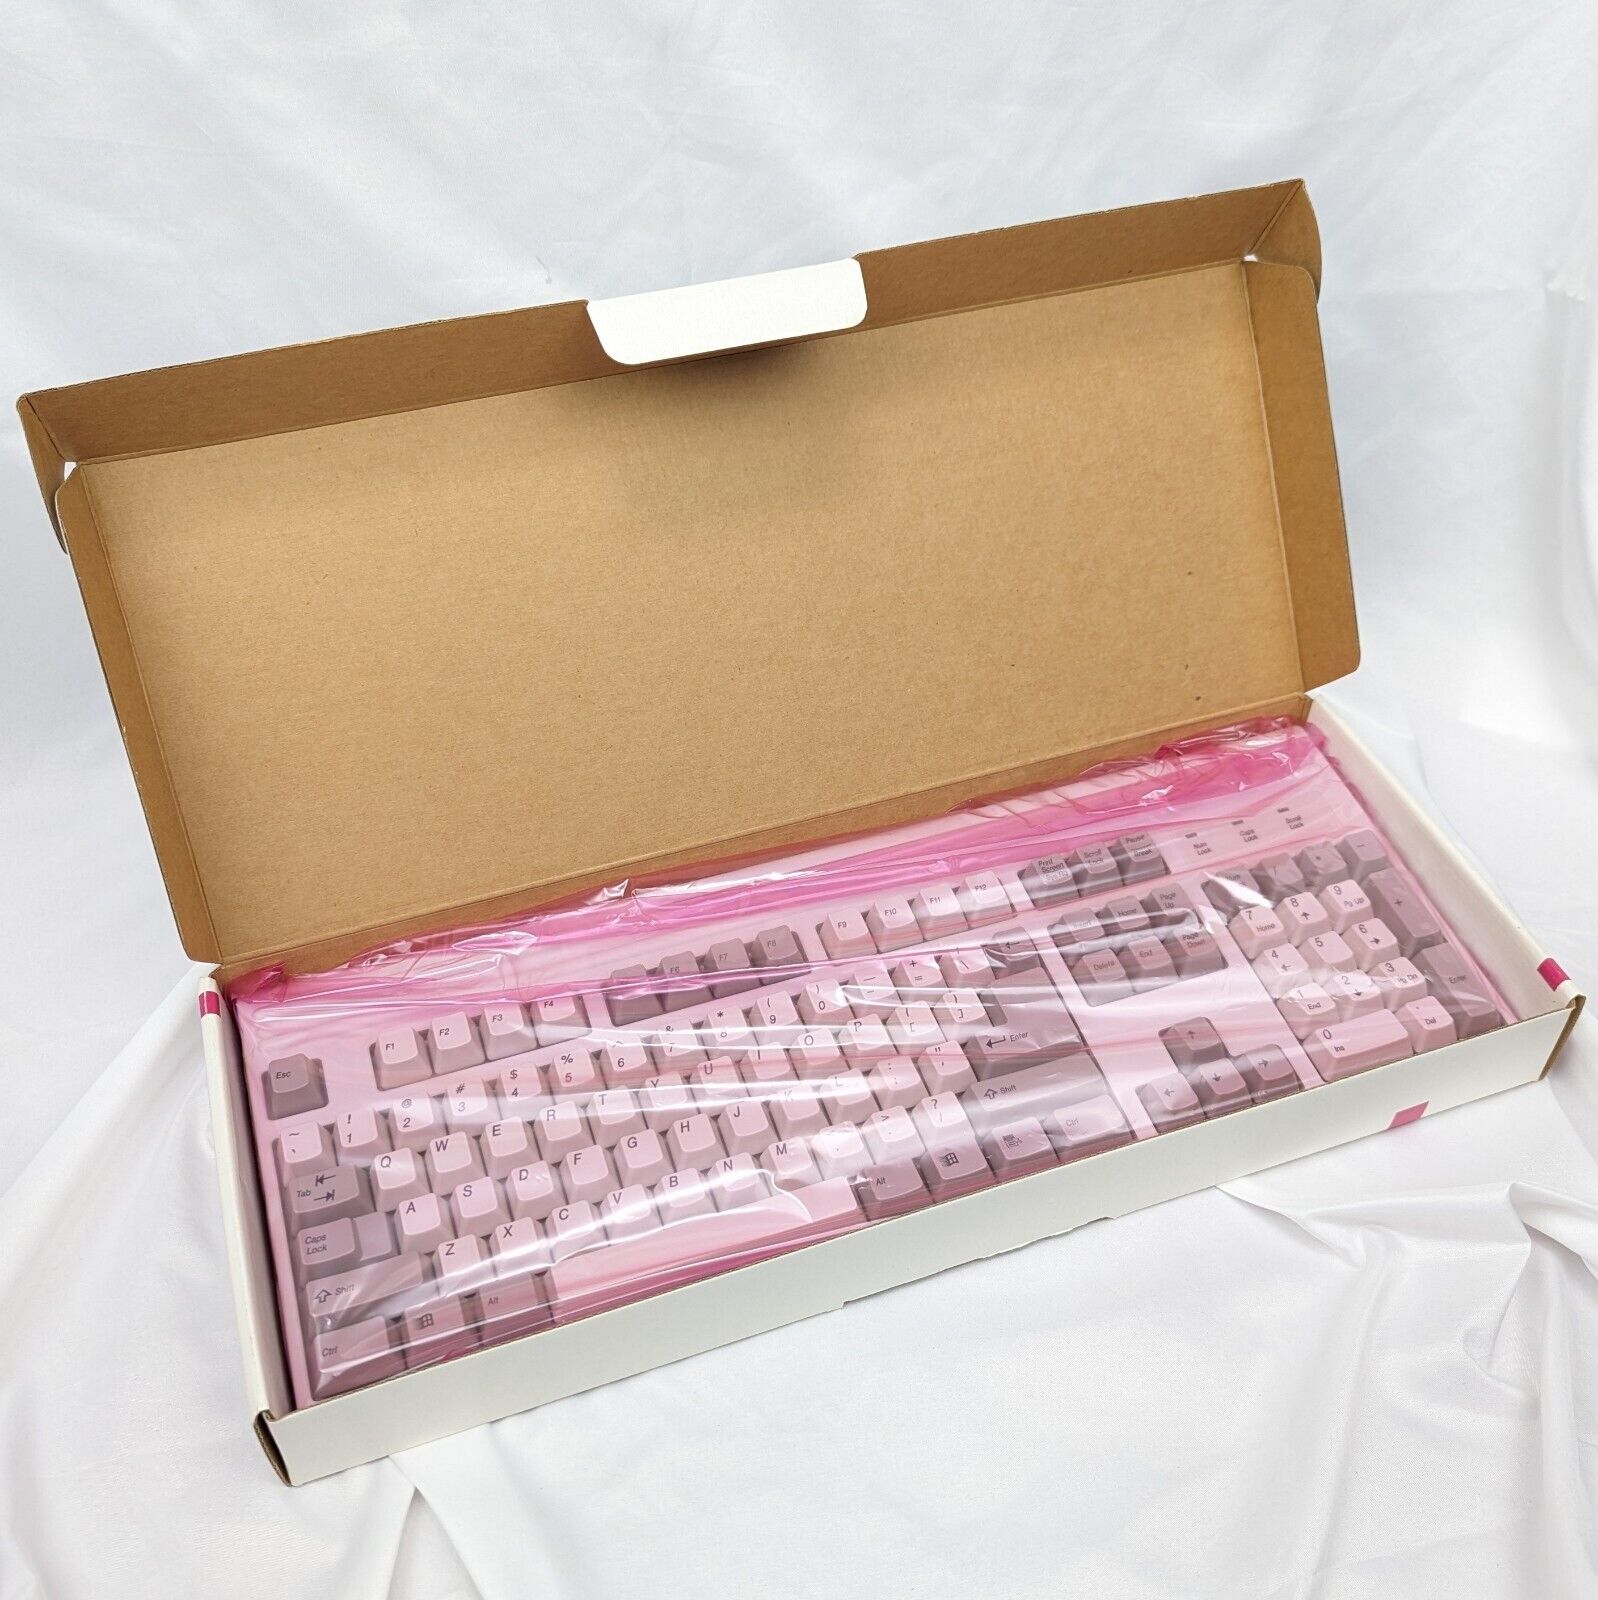 Mitsumi ZW 104 Keyboard KPQ-Z Series Windows 95 Compatible Brand New Vintage